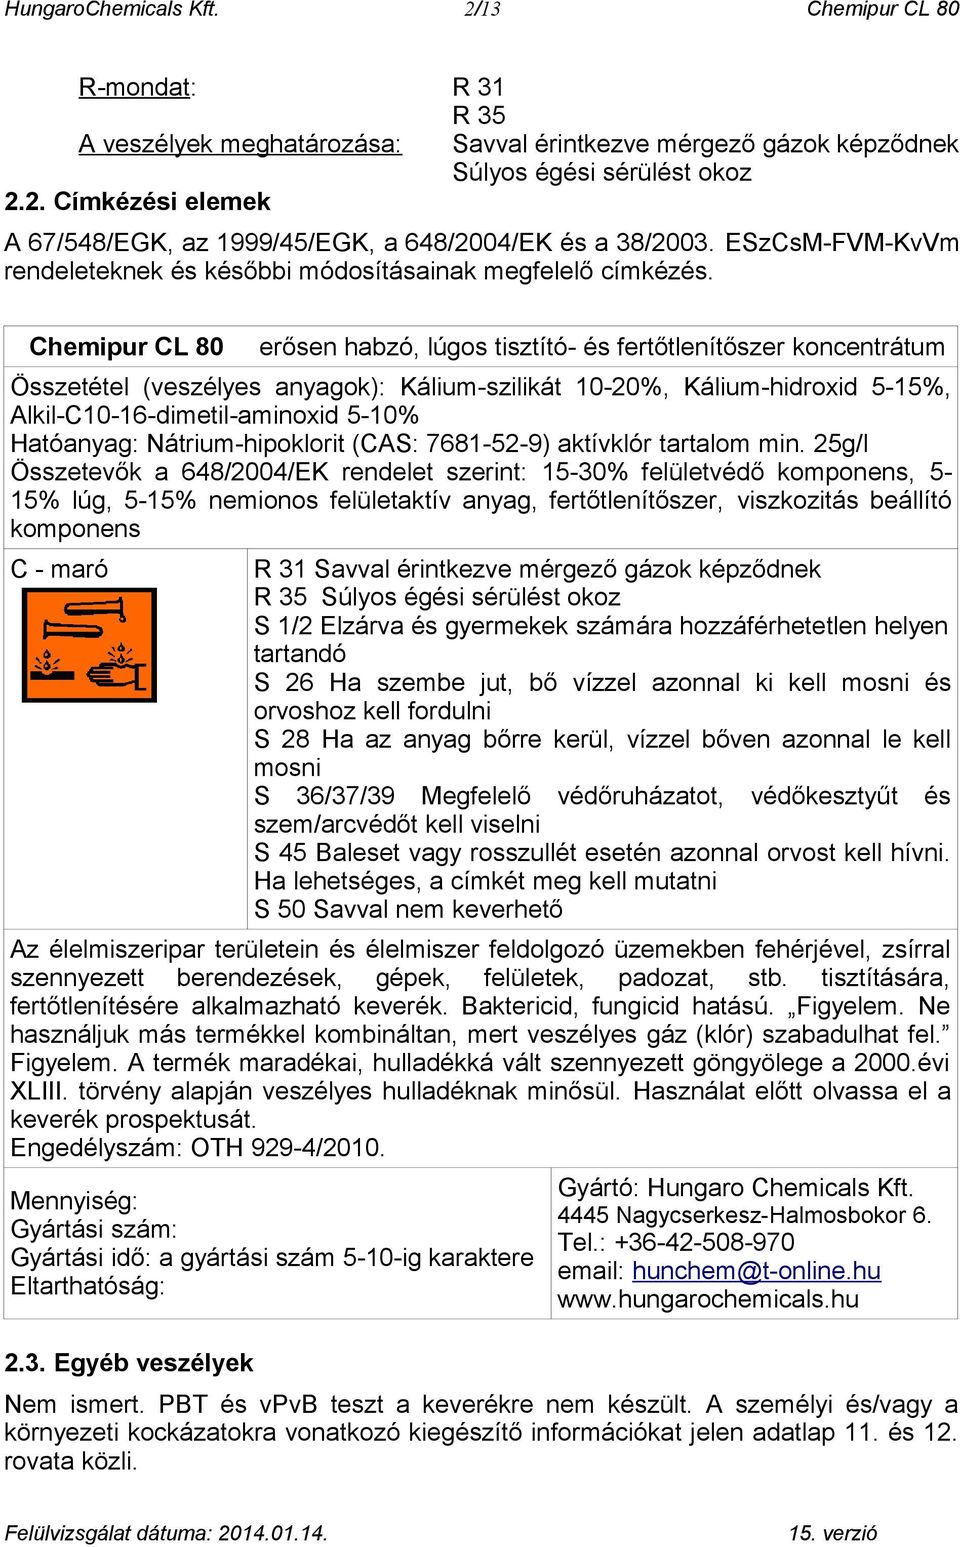 Chemipur CL 80 erősen habzó, lúgos tisztító- és fertőtlenítőszer koncentrátum Összetétel (veszélyes anyagok): Kálium-szilikát 10-20%, Kálium-hidroxid 5-15%, Alkil-C10-16-dimetil-aminoxid 5-10%